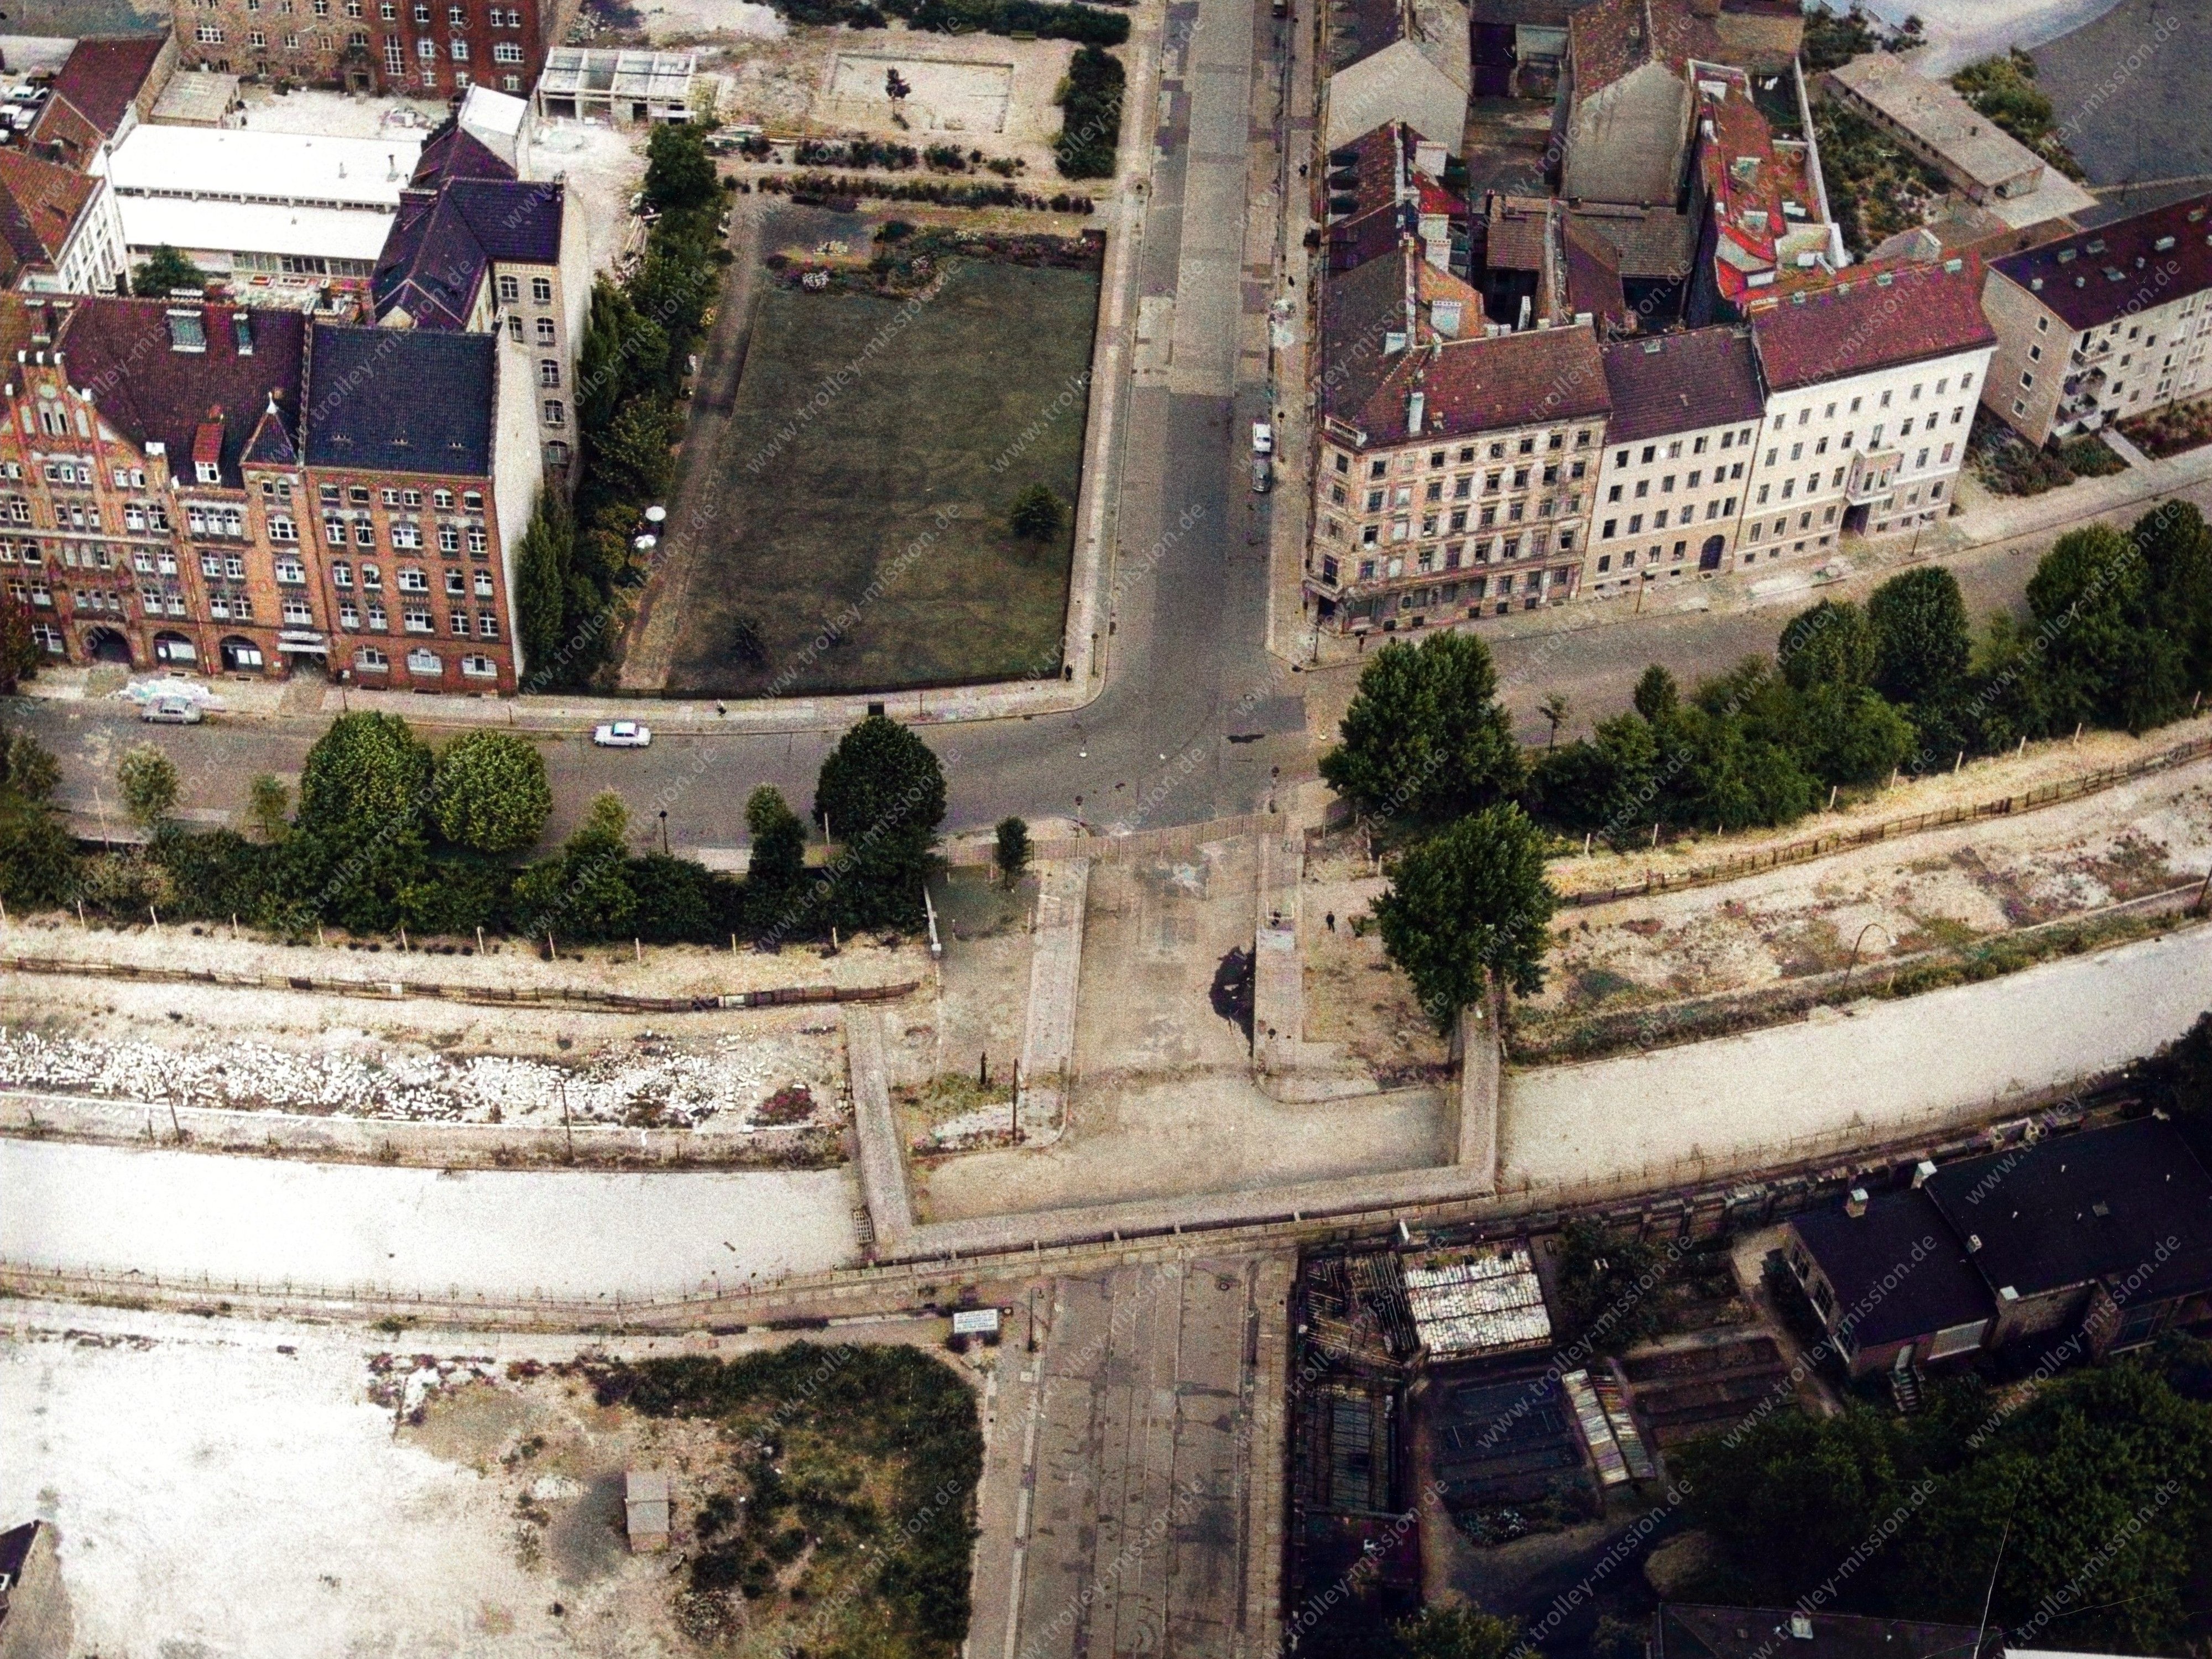 Auf dem Luftbild ist zunächst die Adalbertstraße zu erkennen, die von oben nach unten durch das Bild verläuft. Quer, von links nach rechts durchs Bild, erstrecken sich Engeldamm (obere Straßenseite) sowie Bethaniendamm (untere Straßenseite).